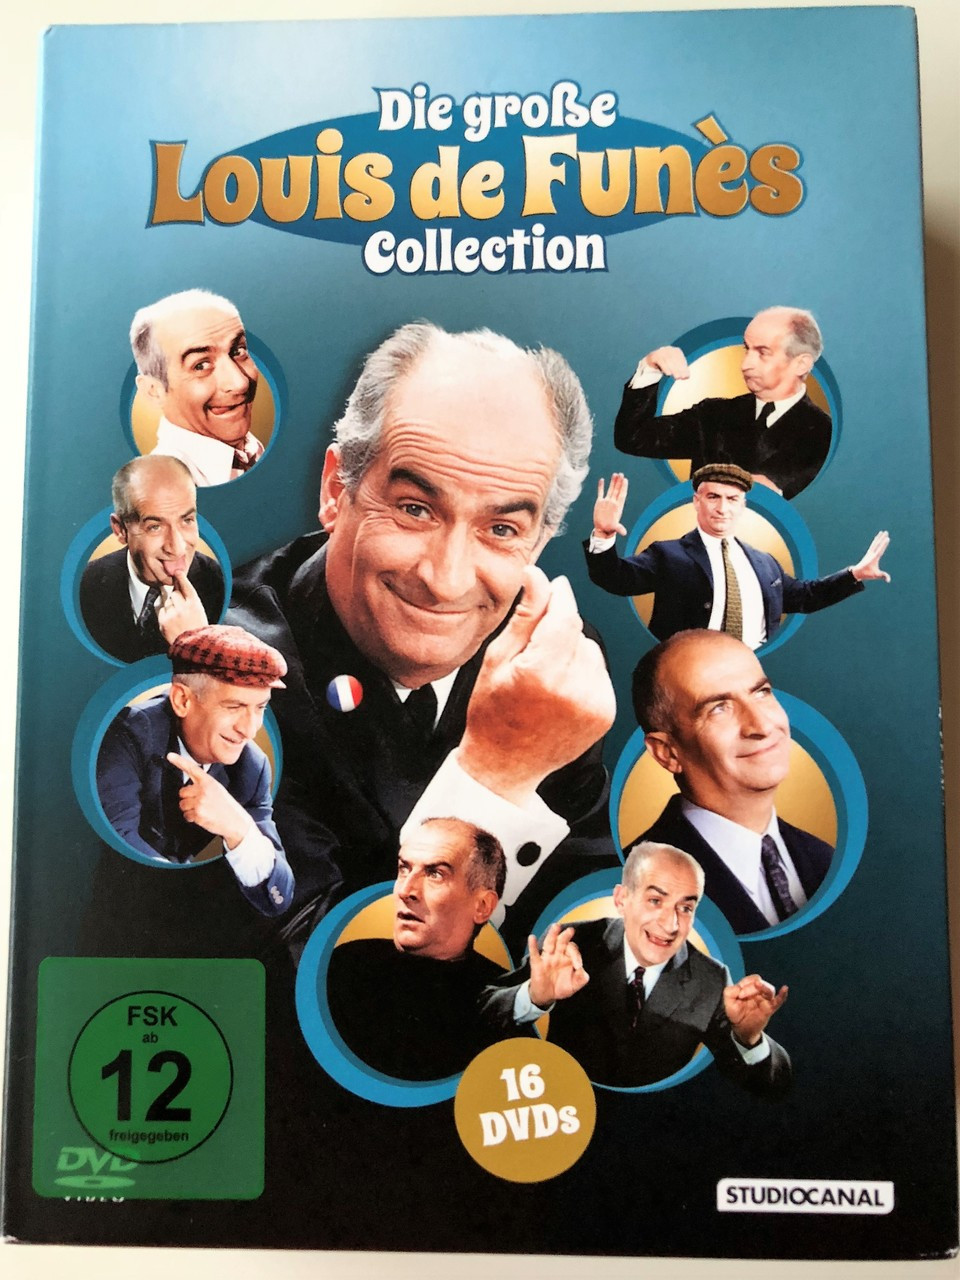 The BIG Louis de Funès DVD BOX / Die große Louis de Funès Collection 16 DVDs  / Audio Options: French or German / Subtitle: German - bibleinmylanguage